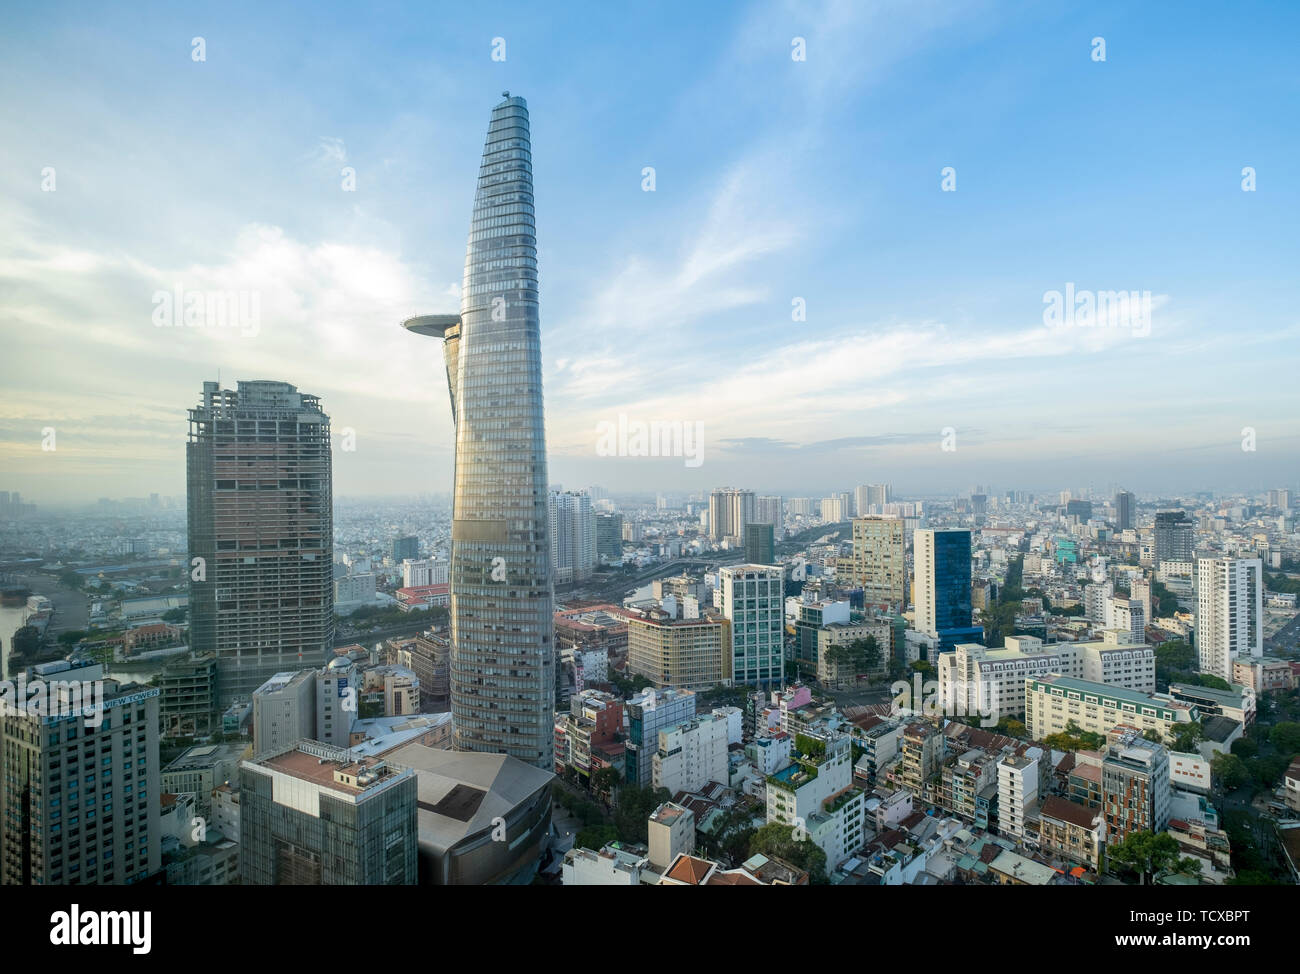 Skyline des Central Business District von Ho Chi Minh City mit der bitexco Tower, Ho Chi Minh City, Vietnam, Indochina, Südostasien, Asien Stockfoto